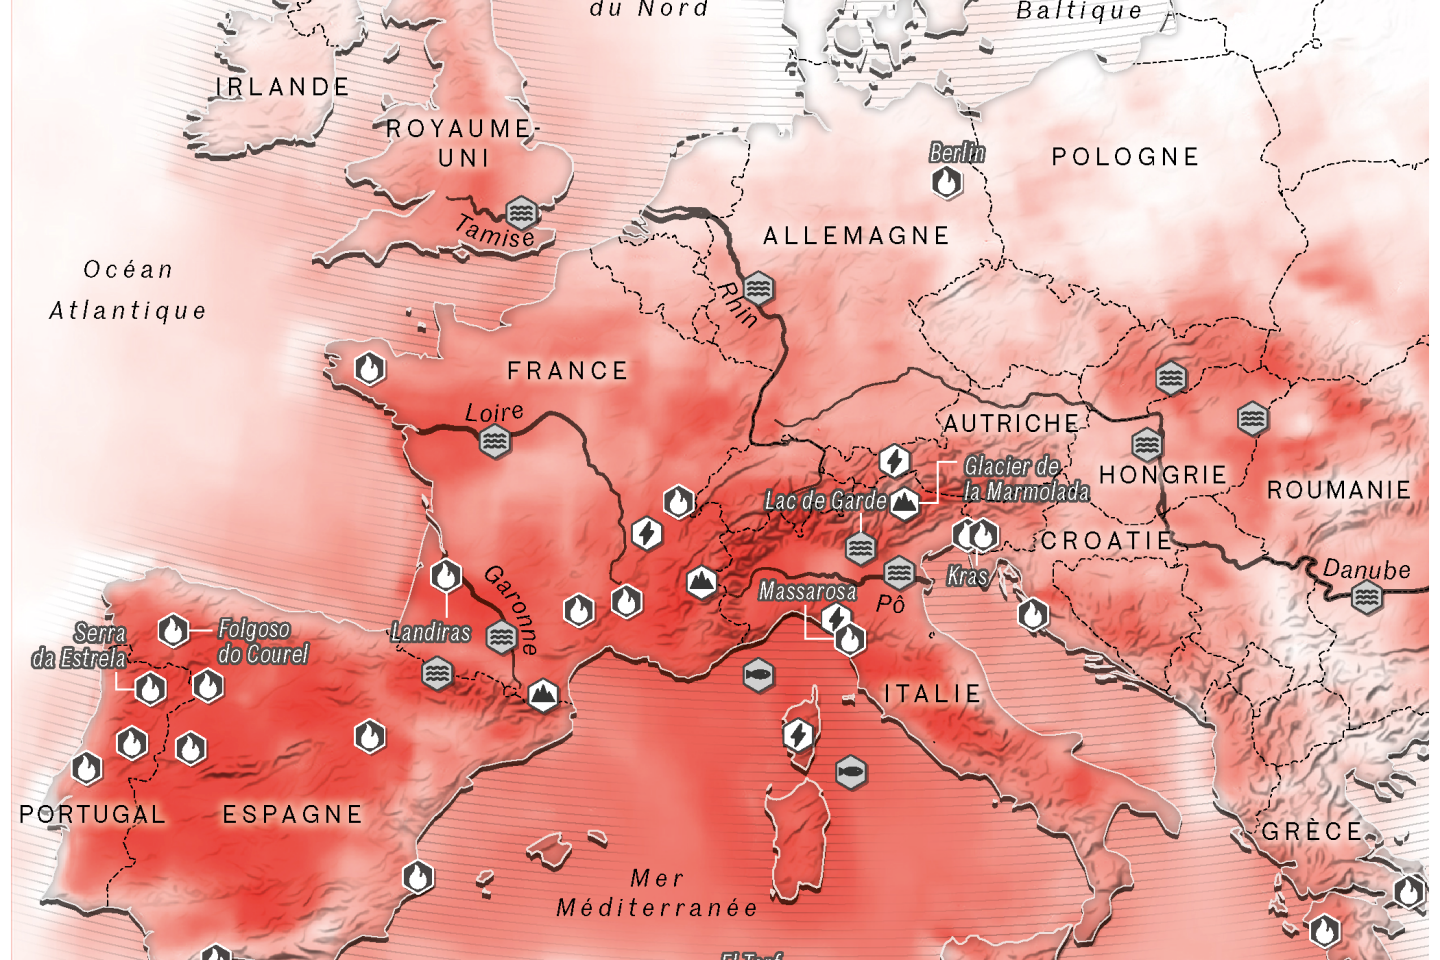 Kaart met extreme temperaturen en weersomstandigheden deze zomer in Europa